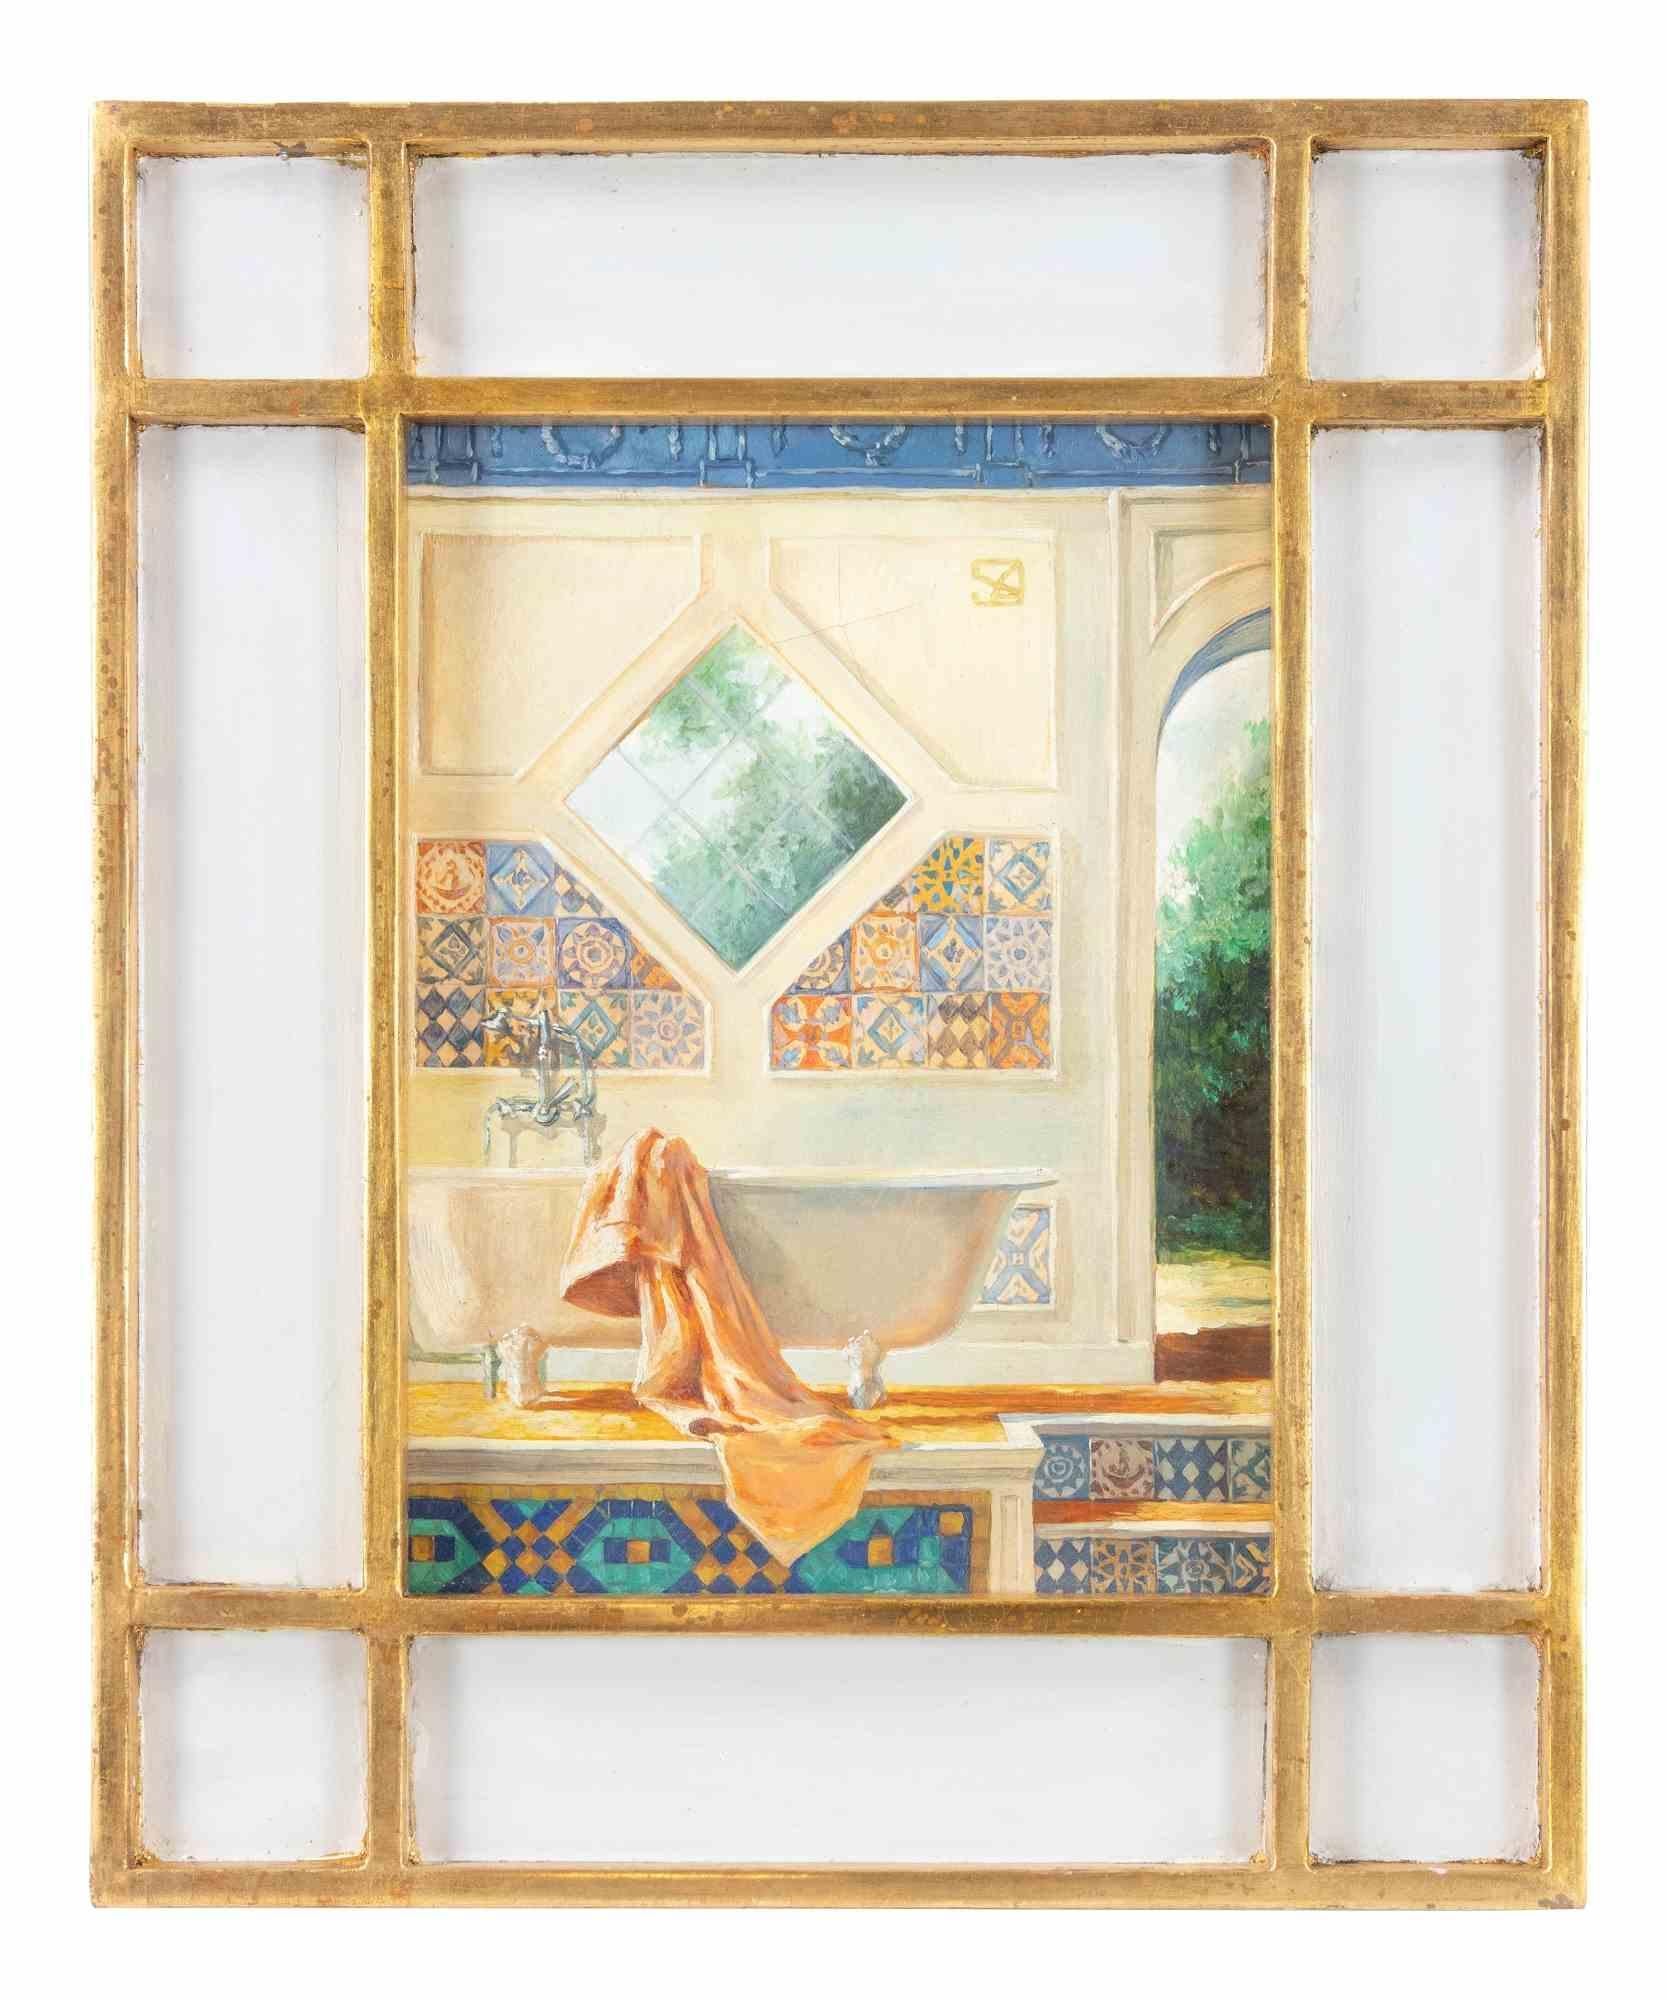 Orientalisches Bad – Ölgemälde von Alexander Sergeev  - 1990s – Painting von Alexander Sergheev